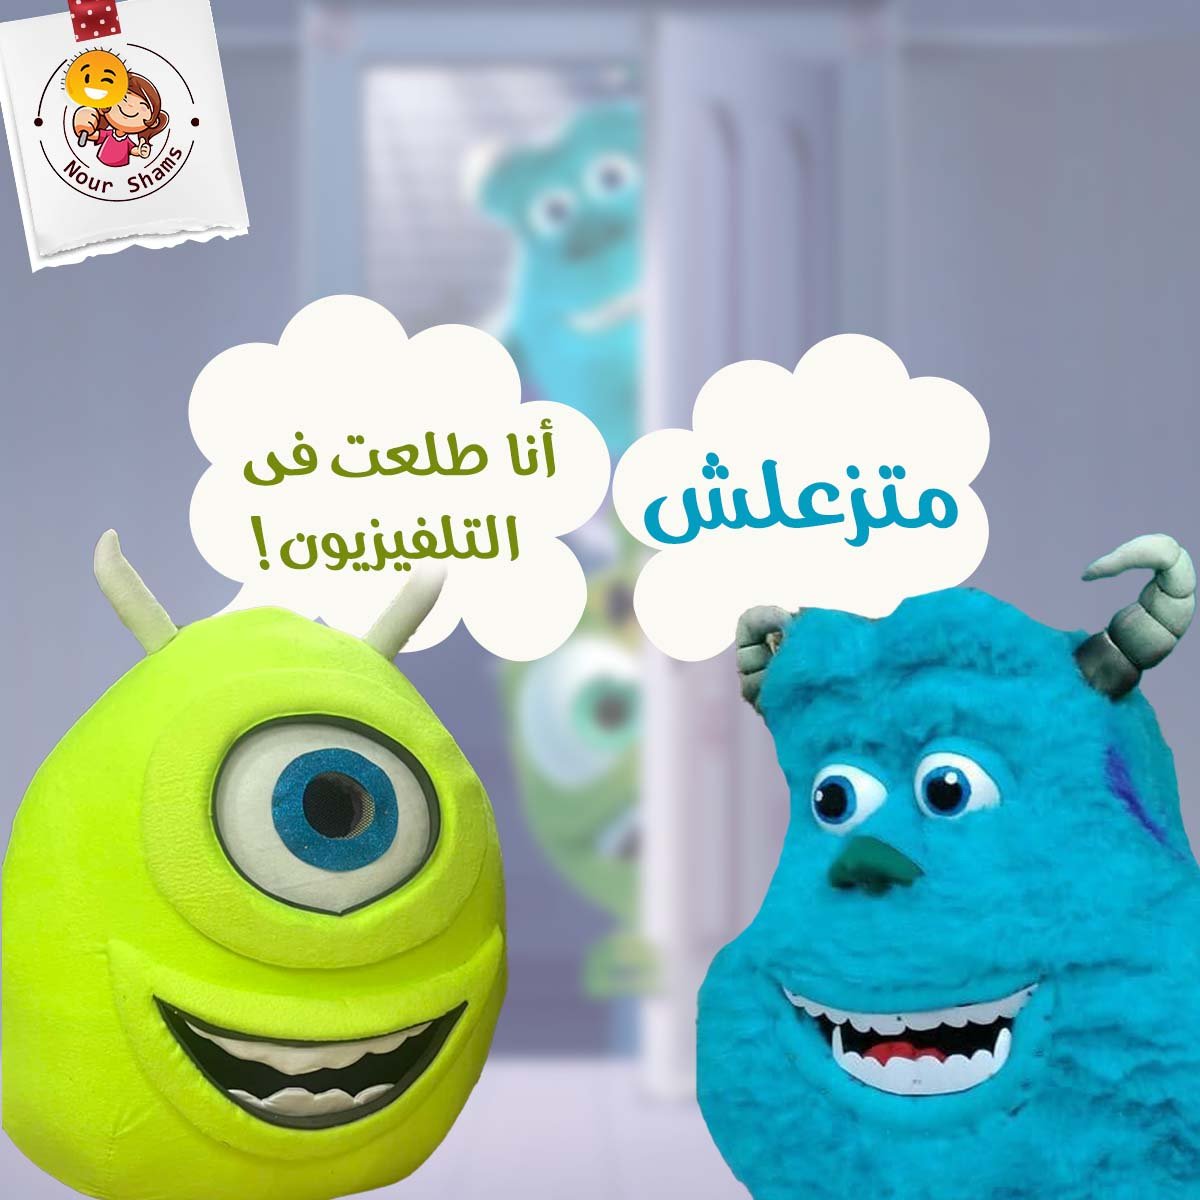 Nour Shams Mascots Social Media Marketing